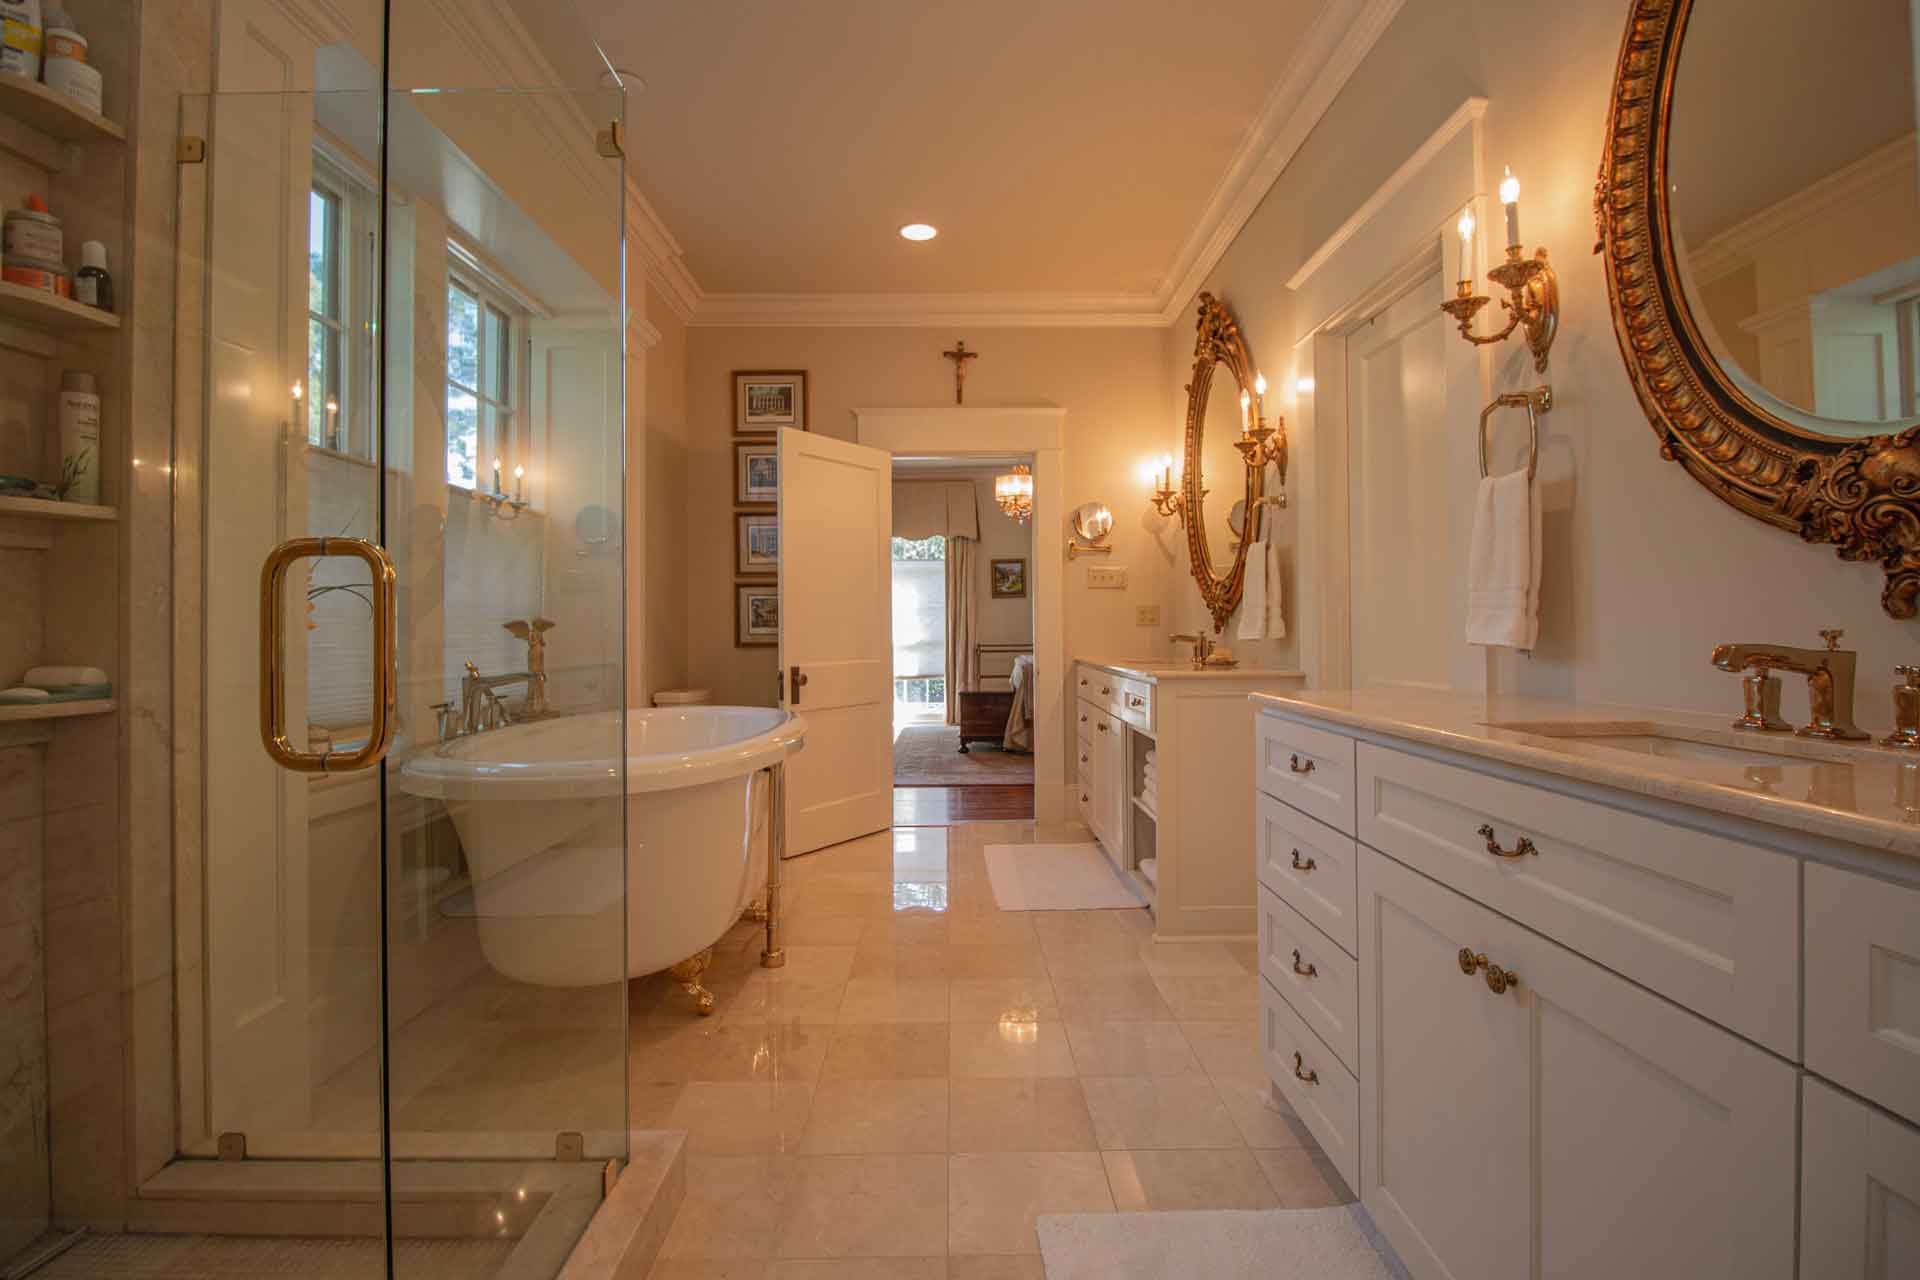 Luxurious bathroom with new tile floors